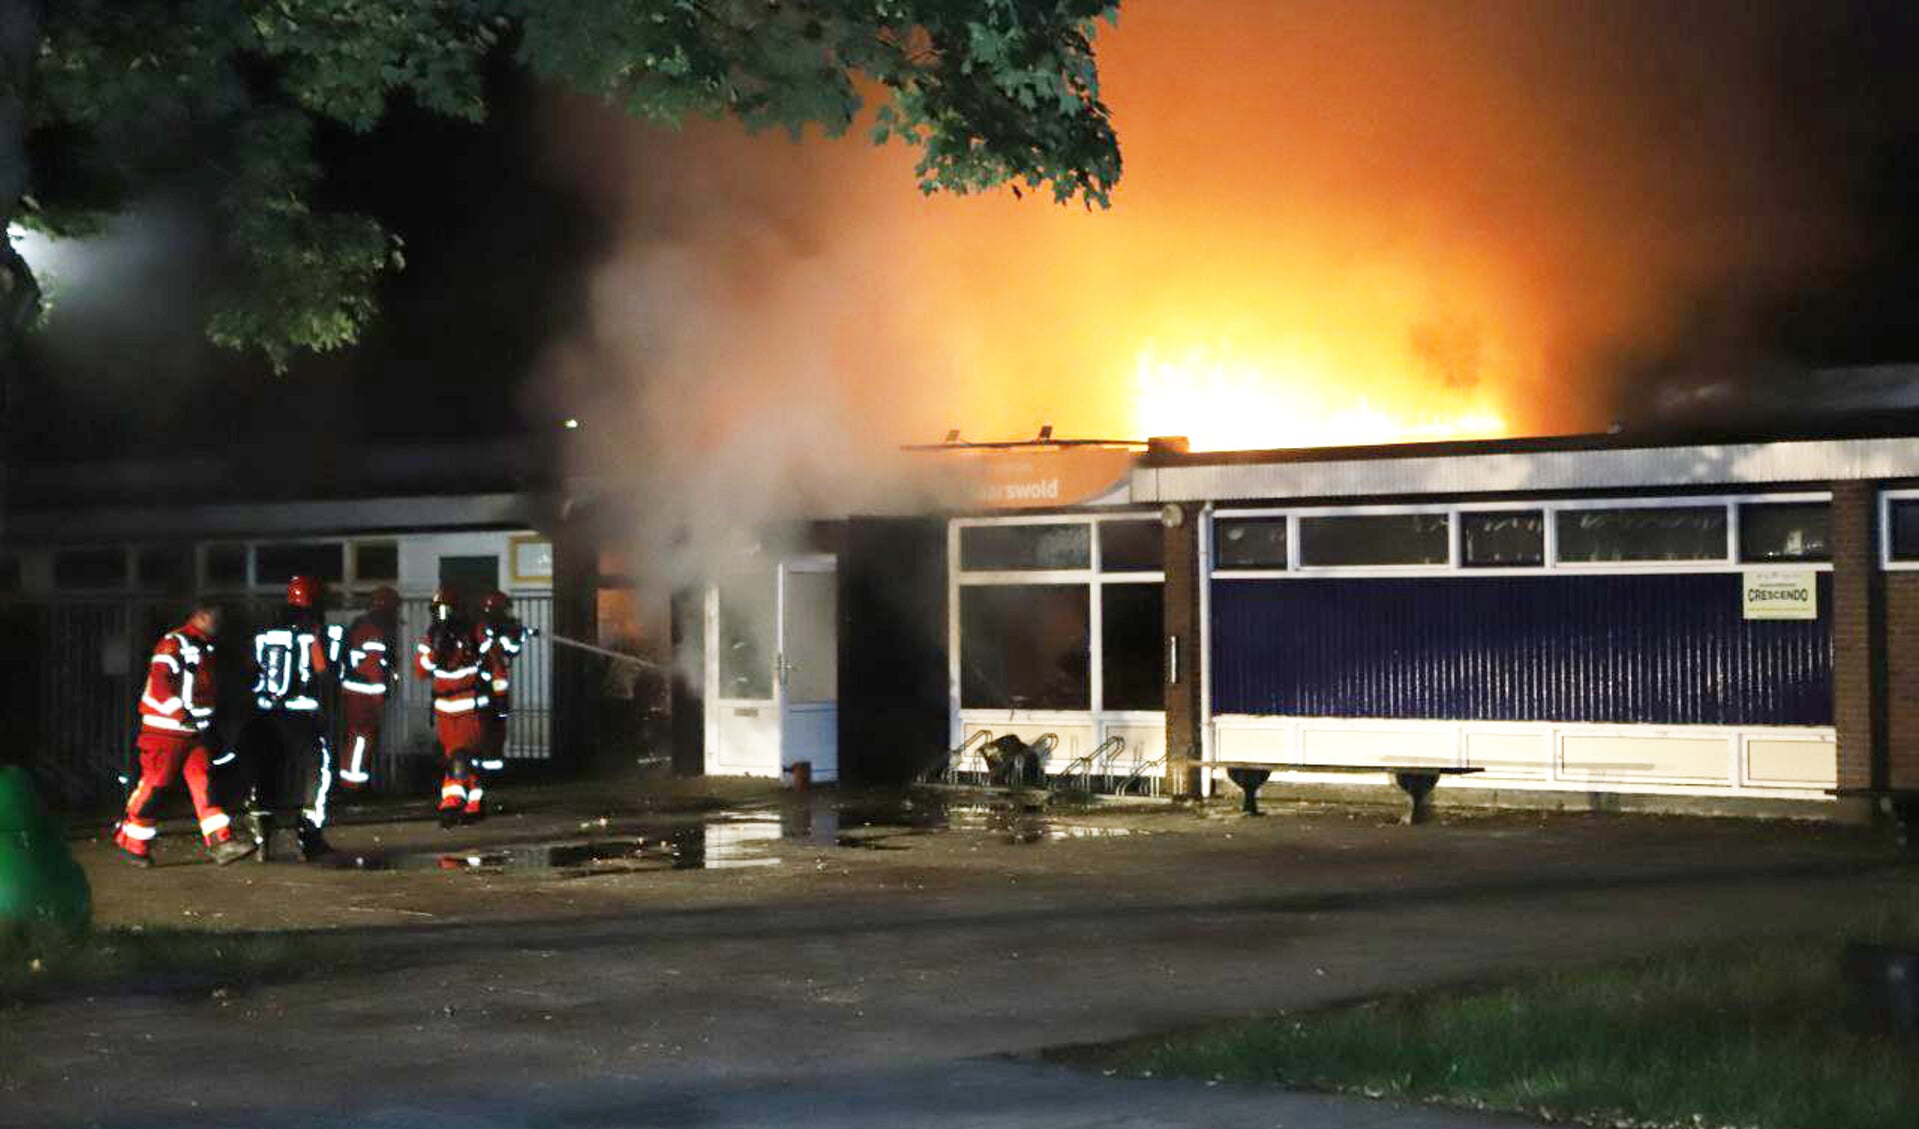 De vlammen komen uit het dak van buurtcentrum Maarswold. (foto: Persbureau Groningen)